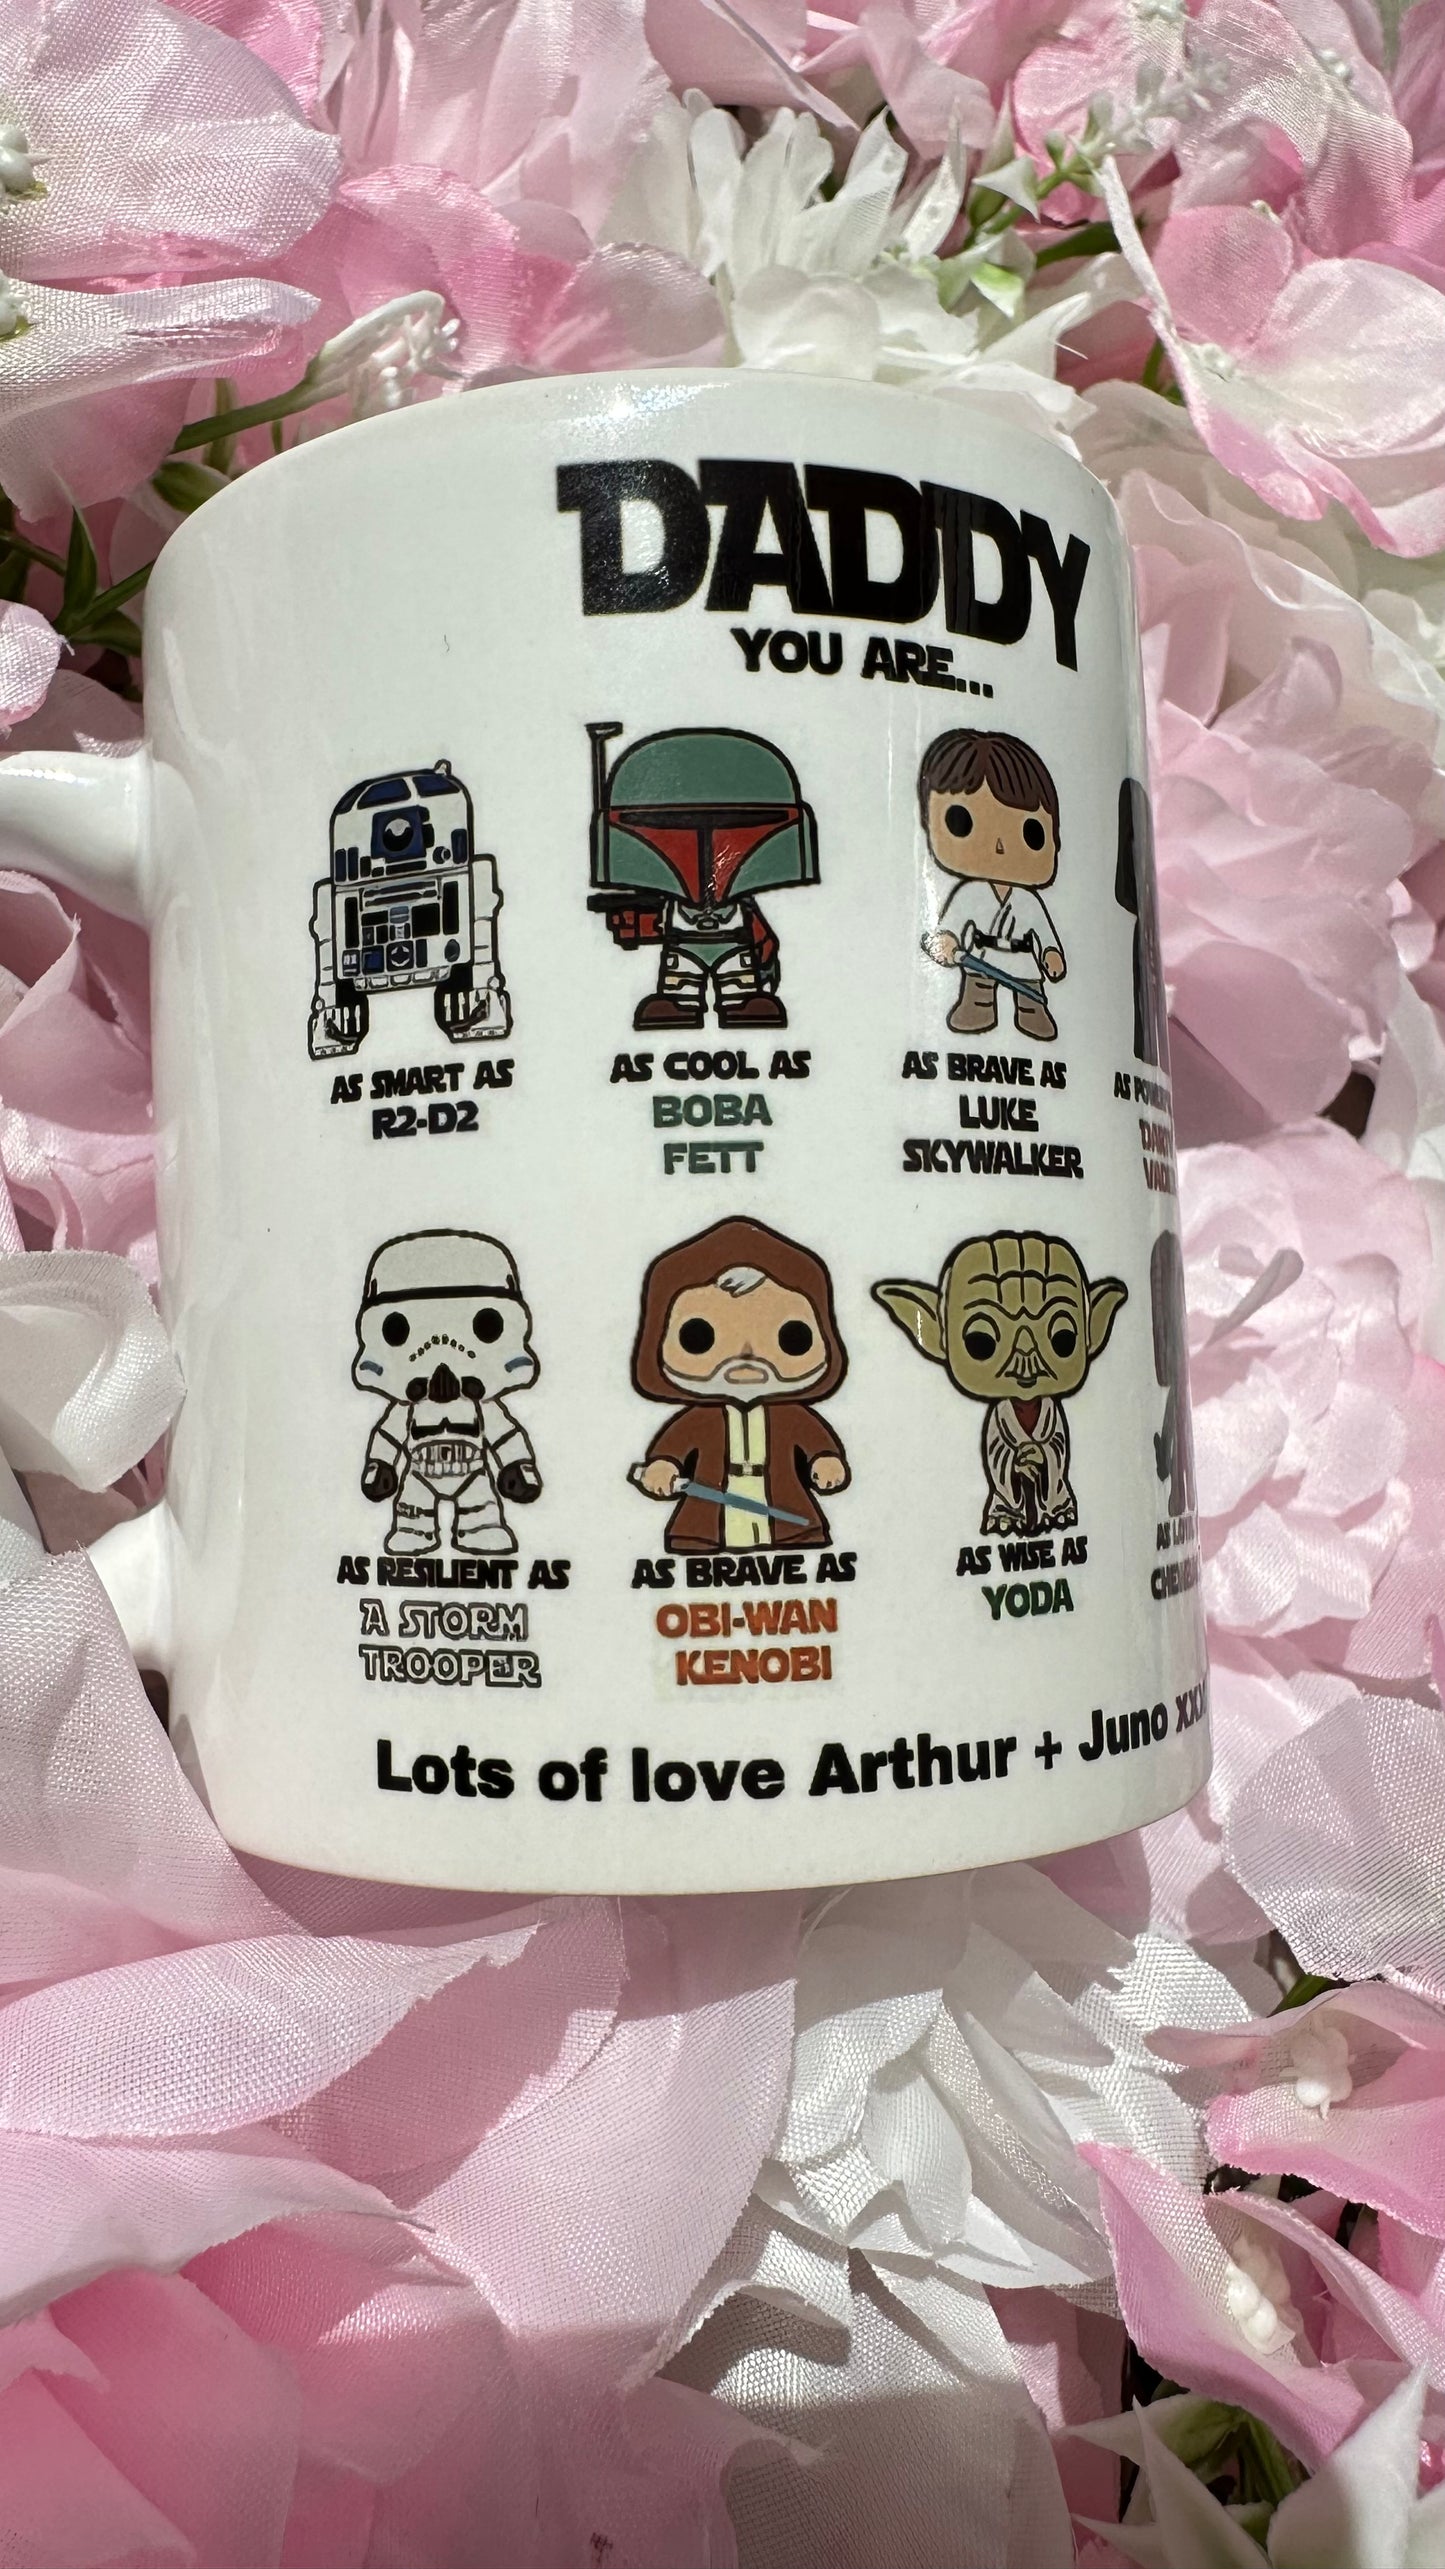 You are as - Star Wars mug